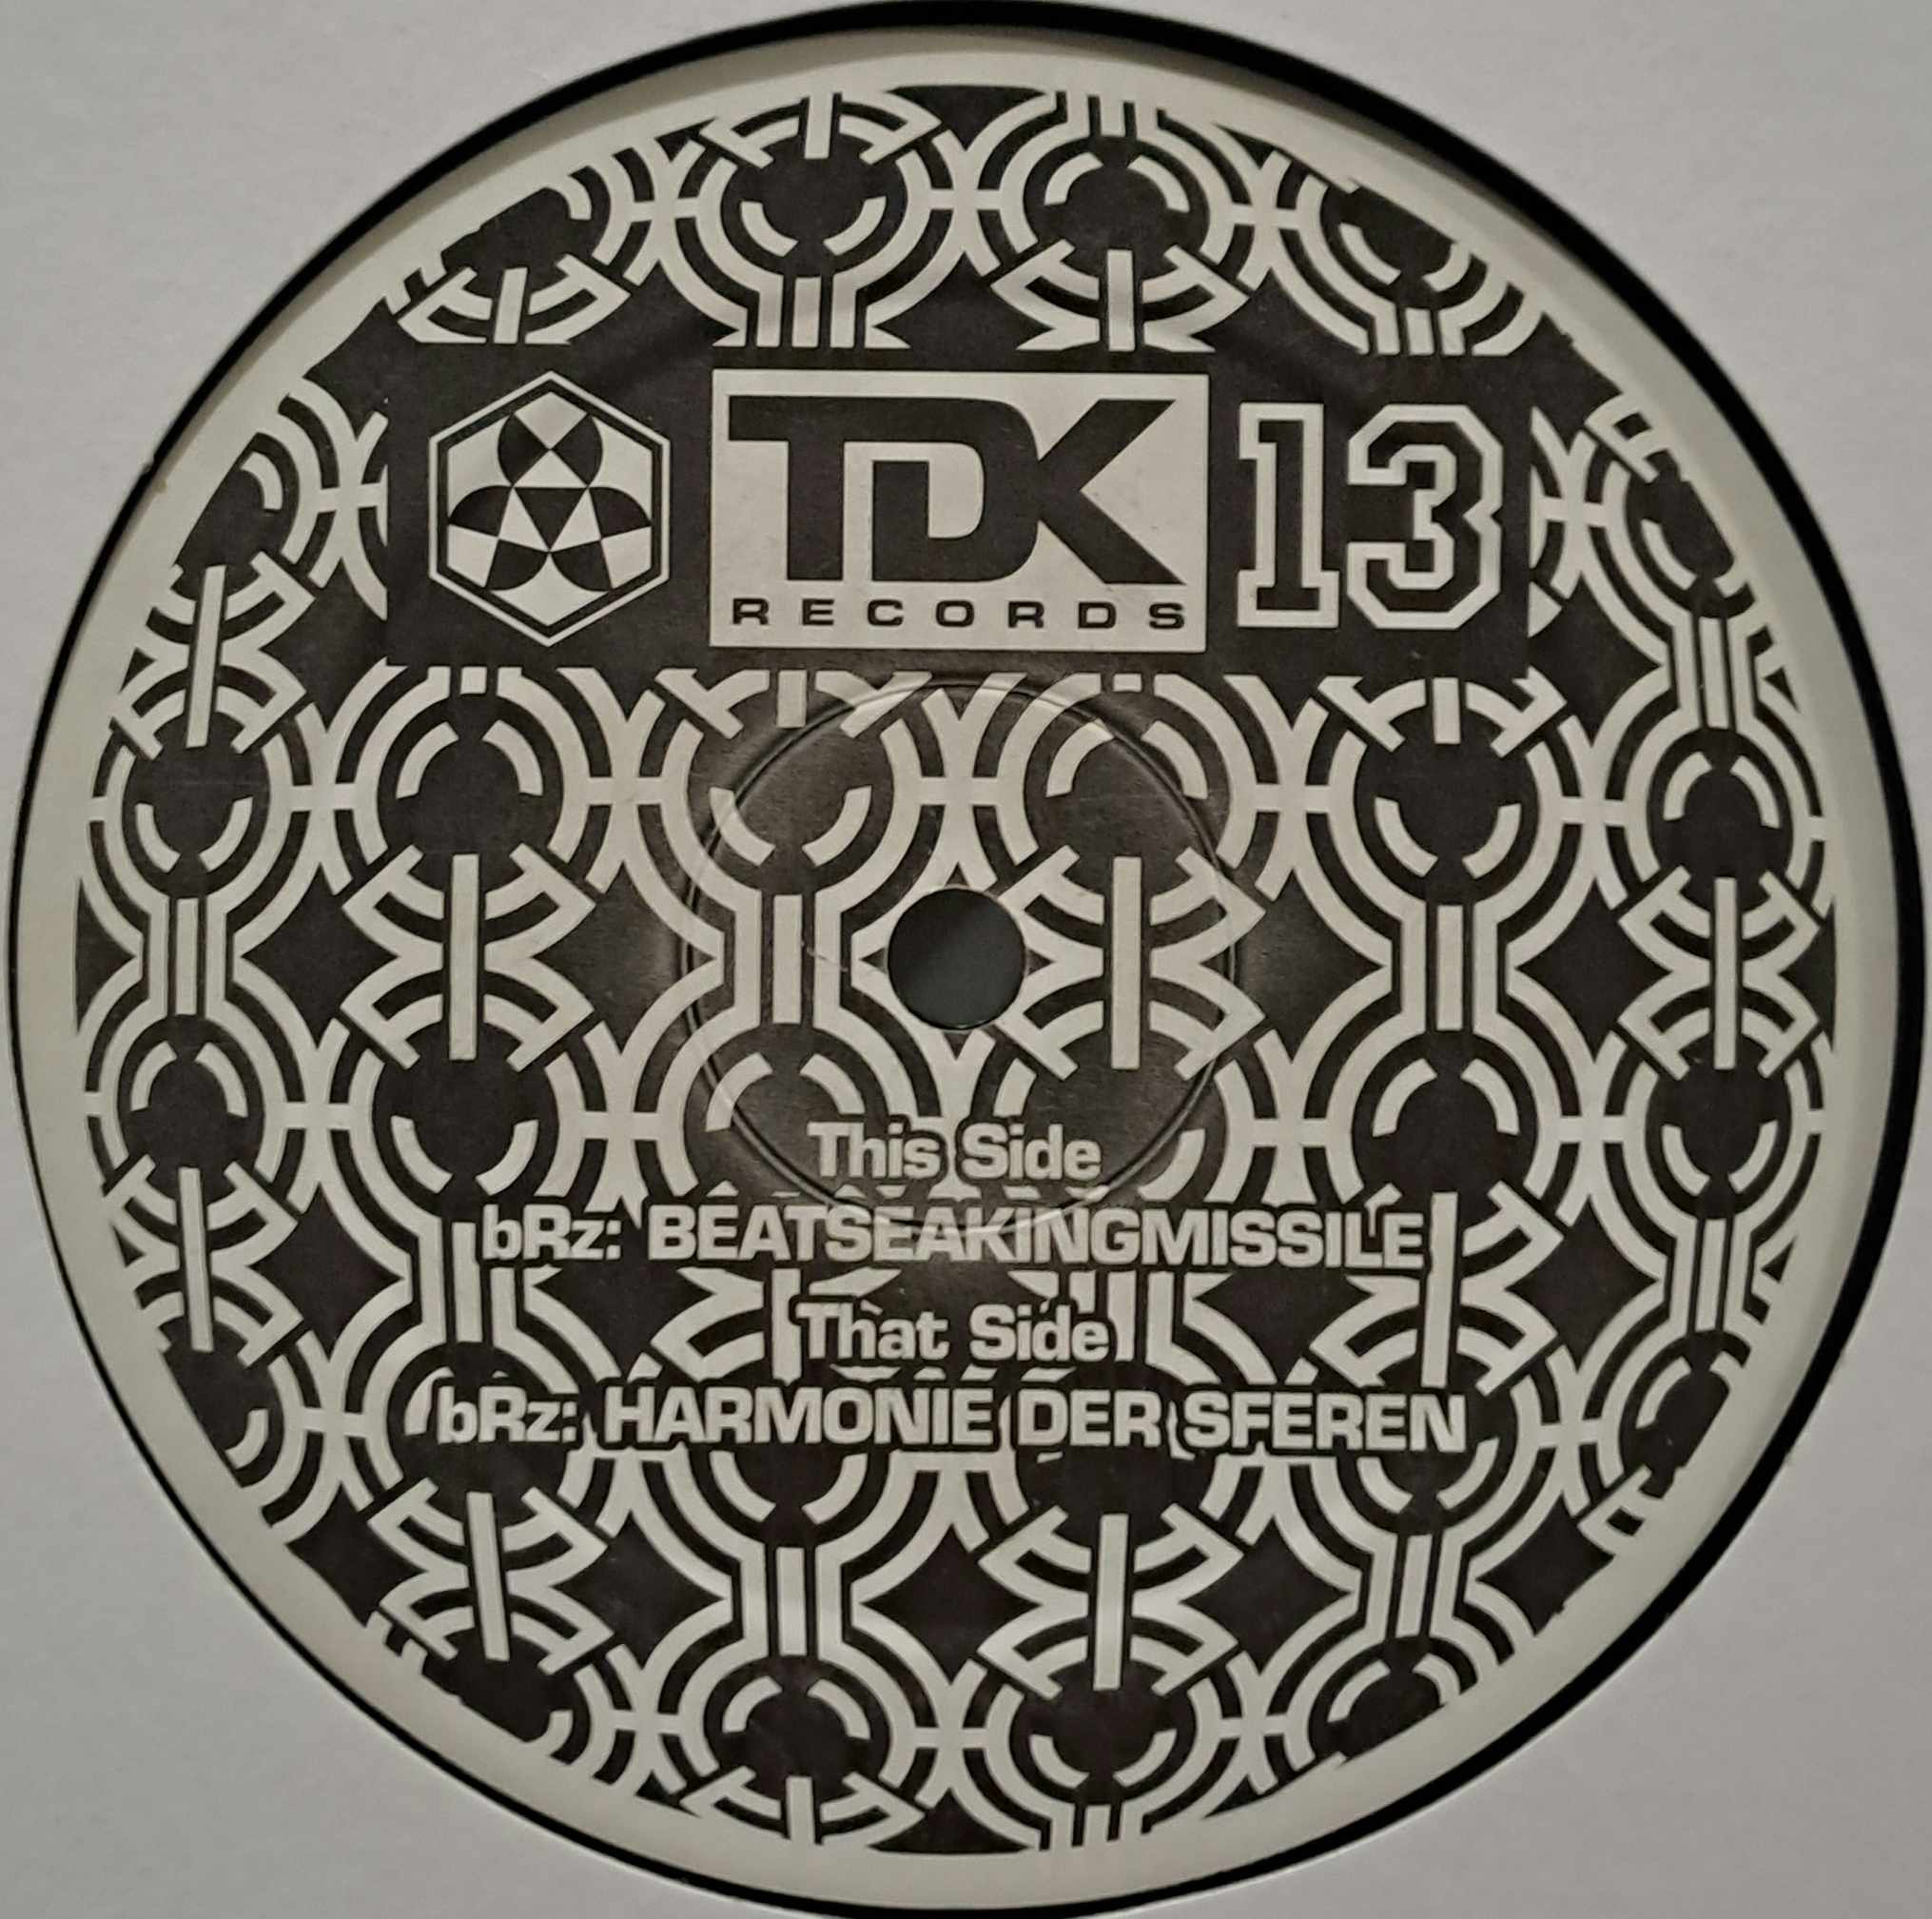 TDK 013 - vinyle acid